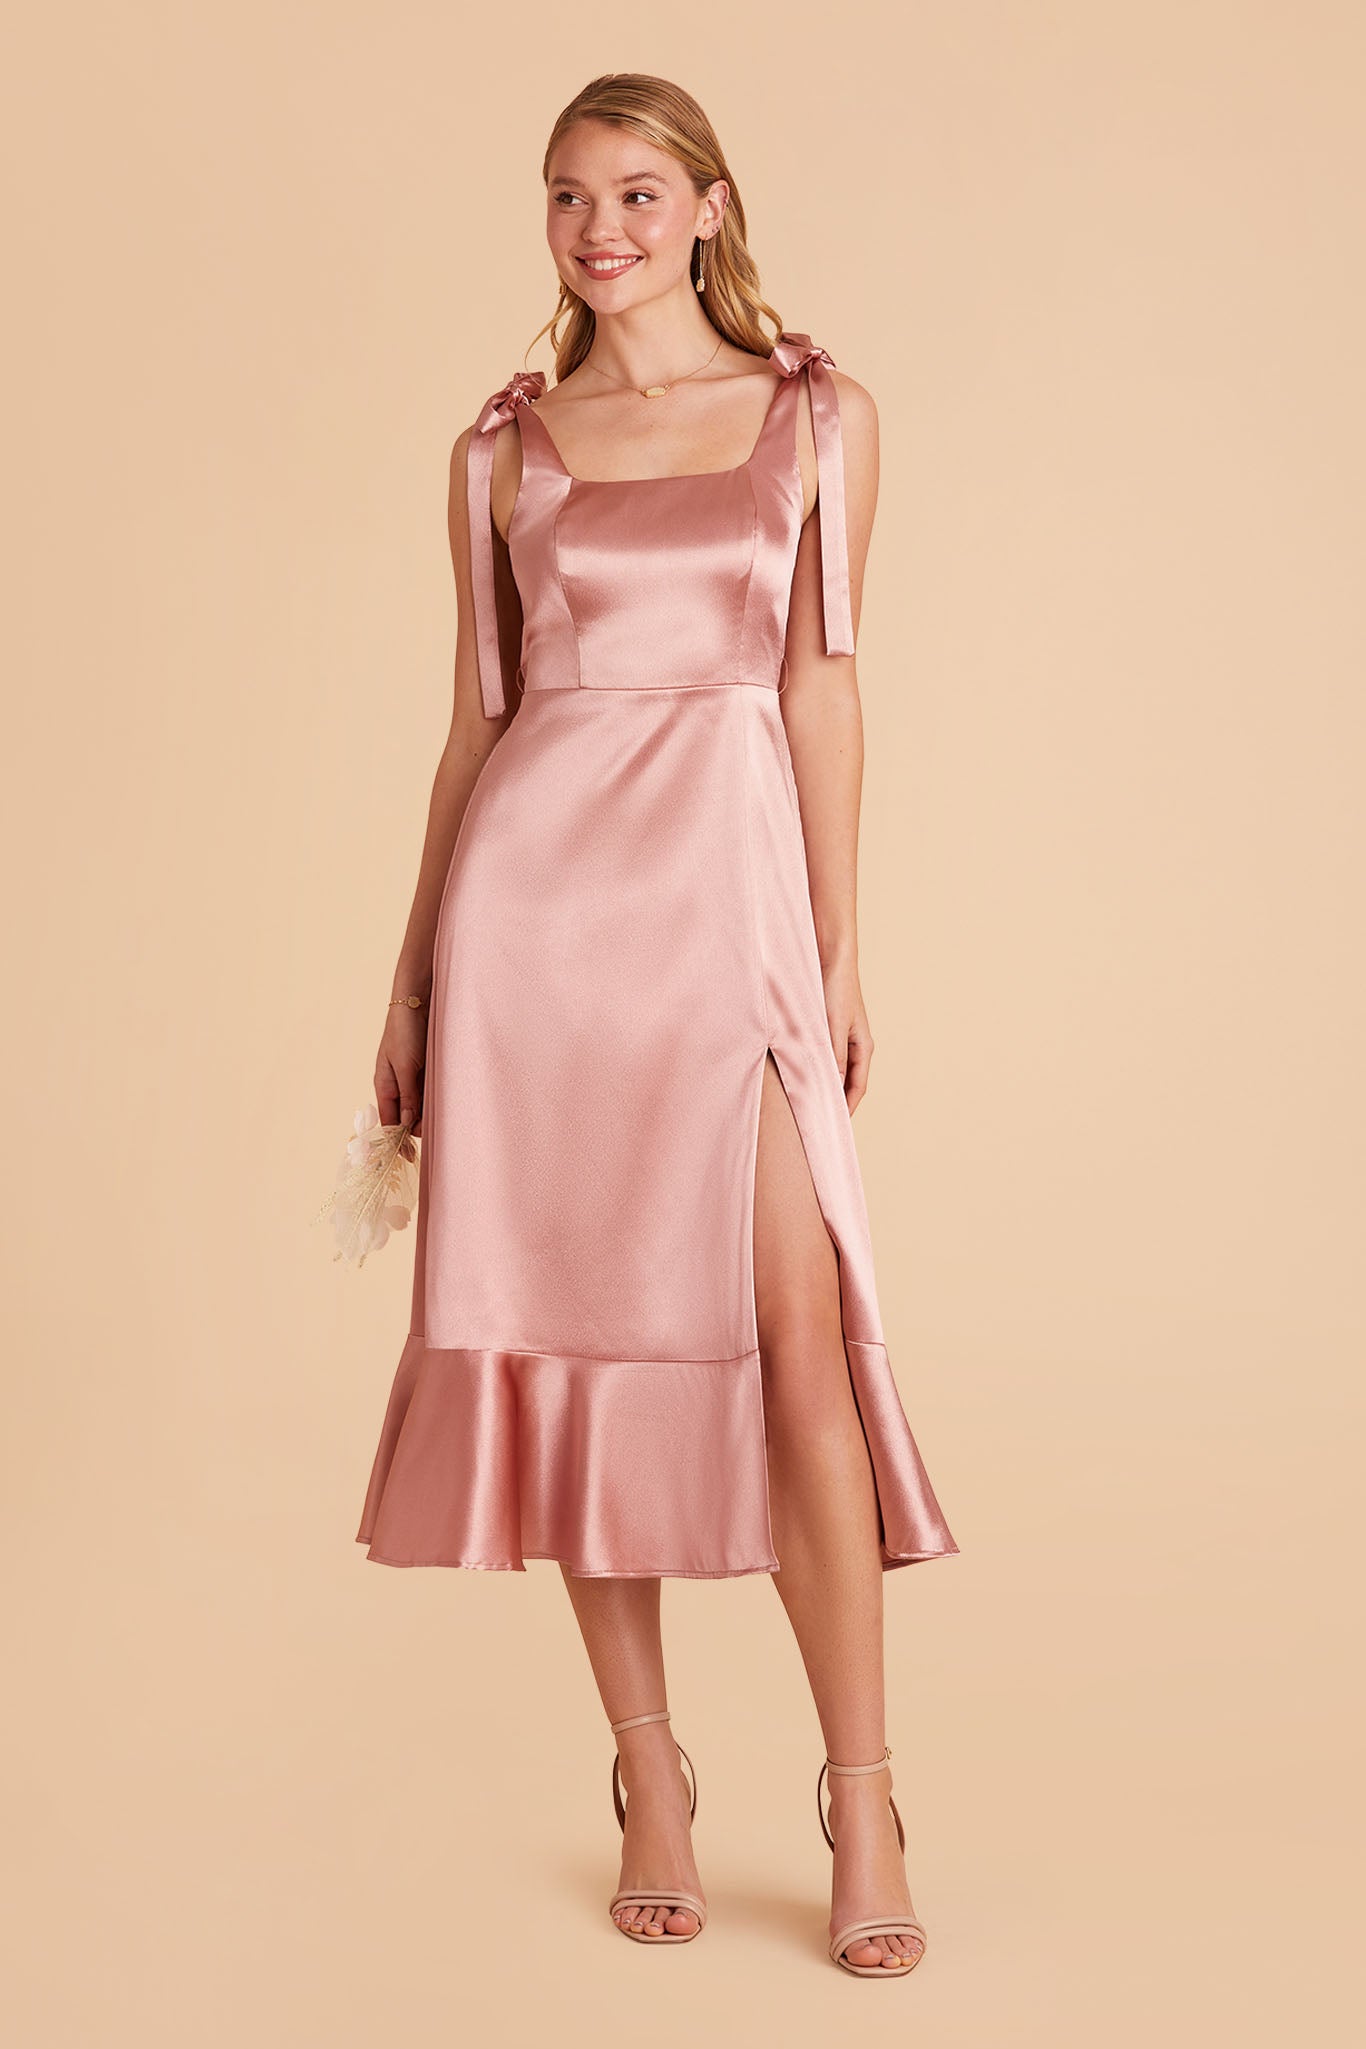 Pink satin convertible pinafore-style midi bridesmaid dress with bows and ruffles